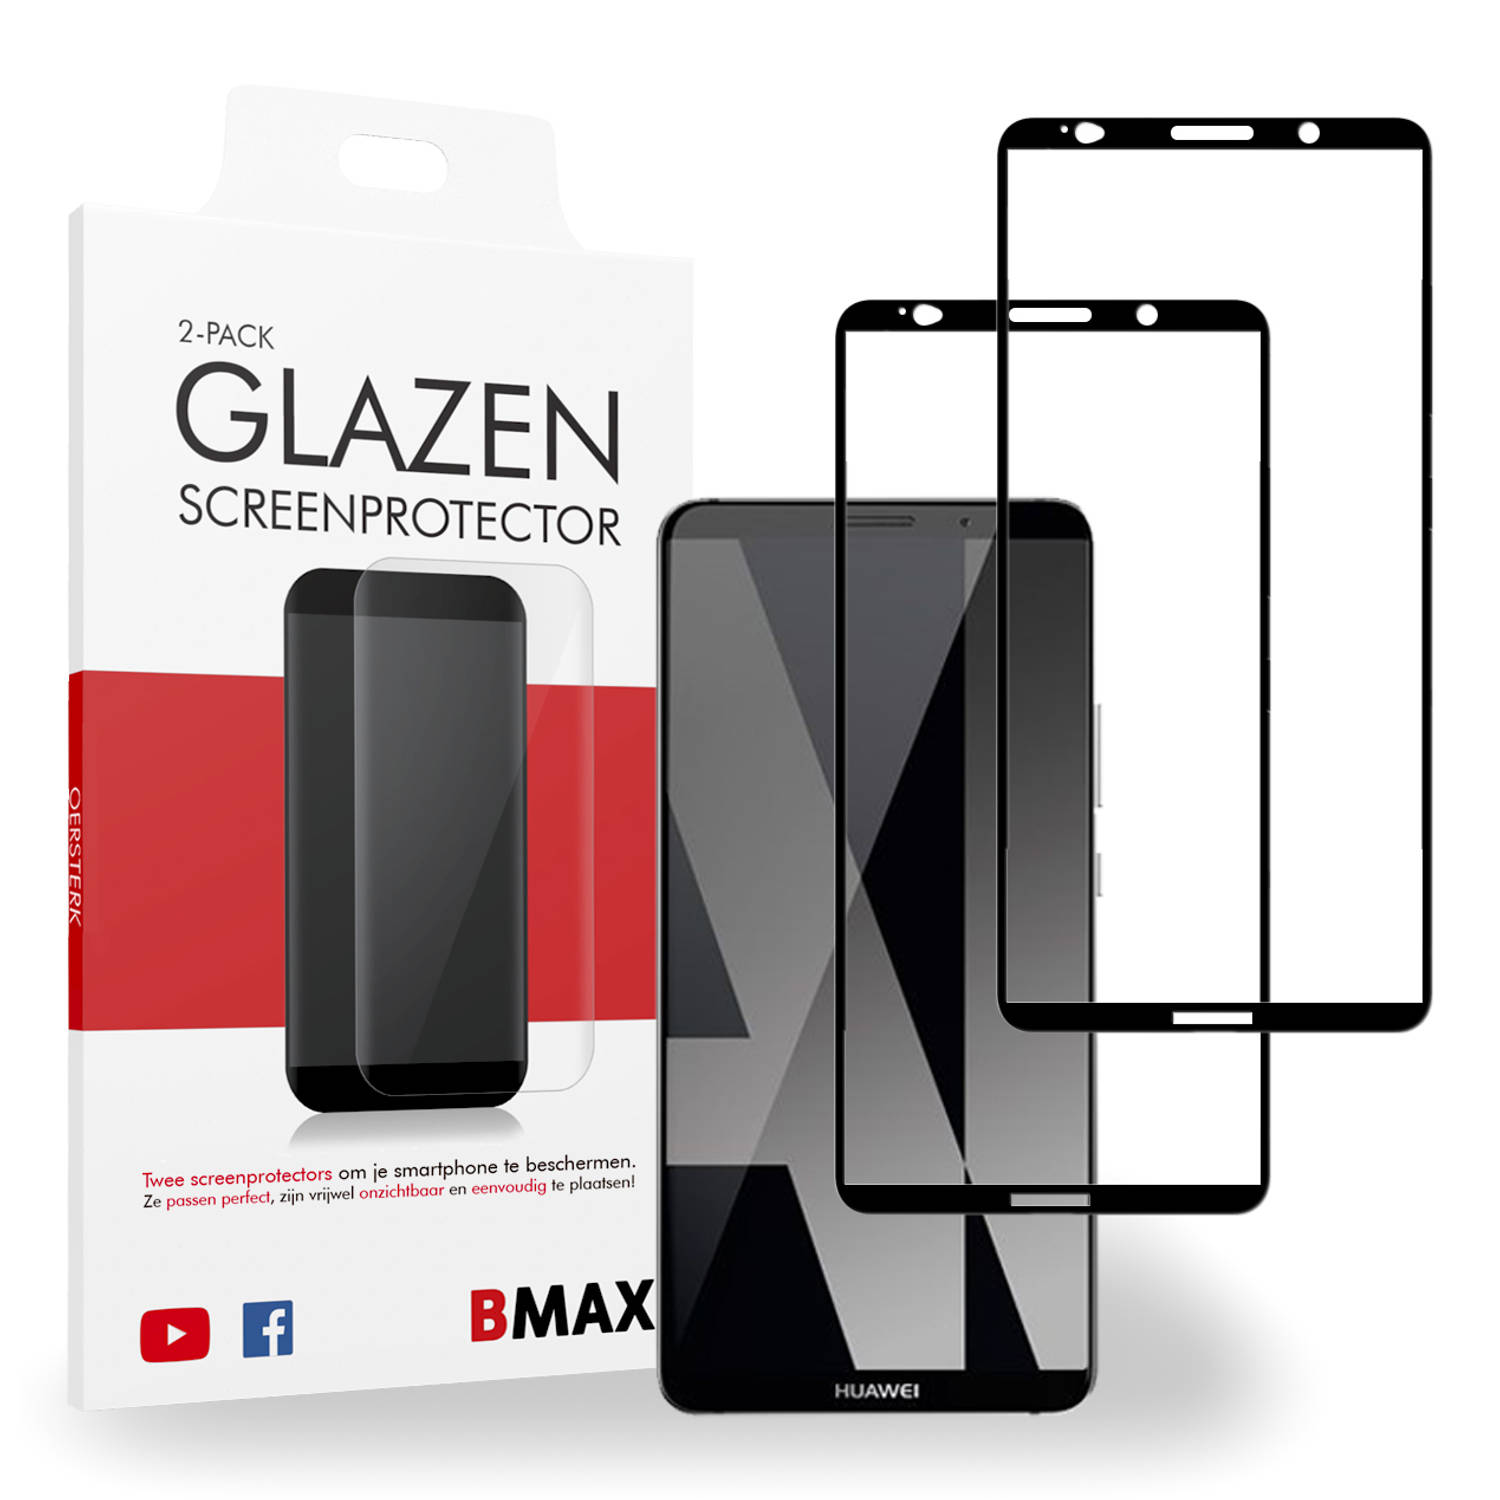 2-pack BMAX Huawei Mate 10 Pro Screenprotector - Glass - Full Cover 2.5D - Black